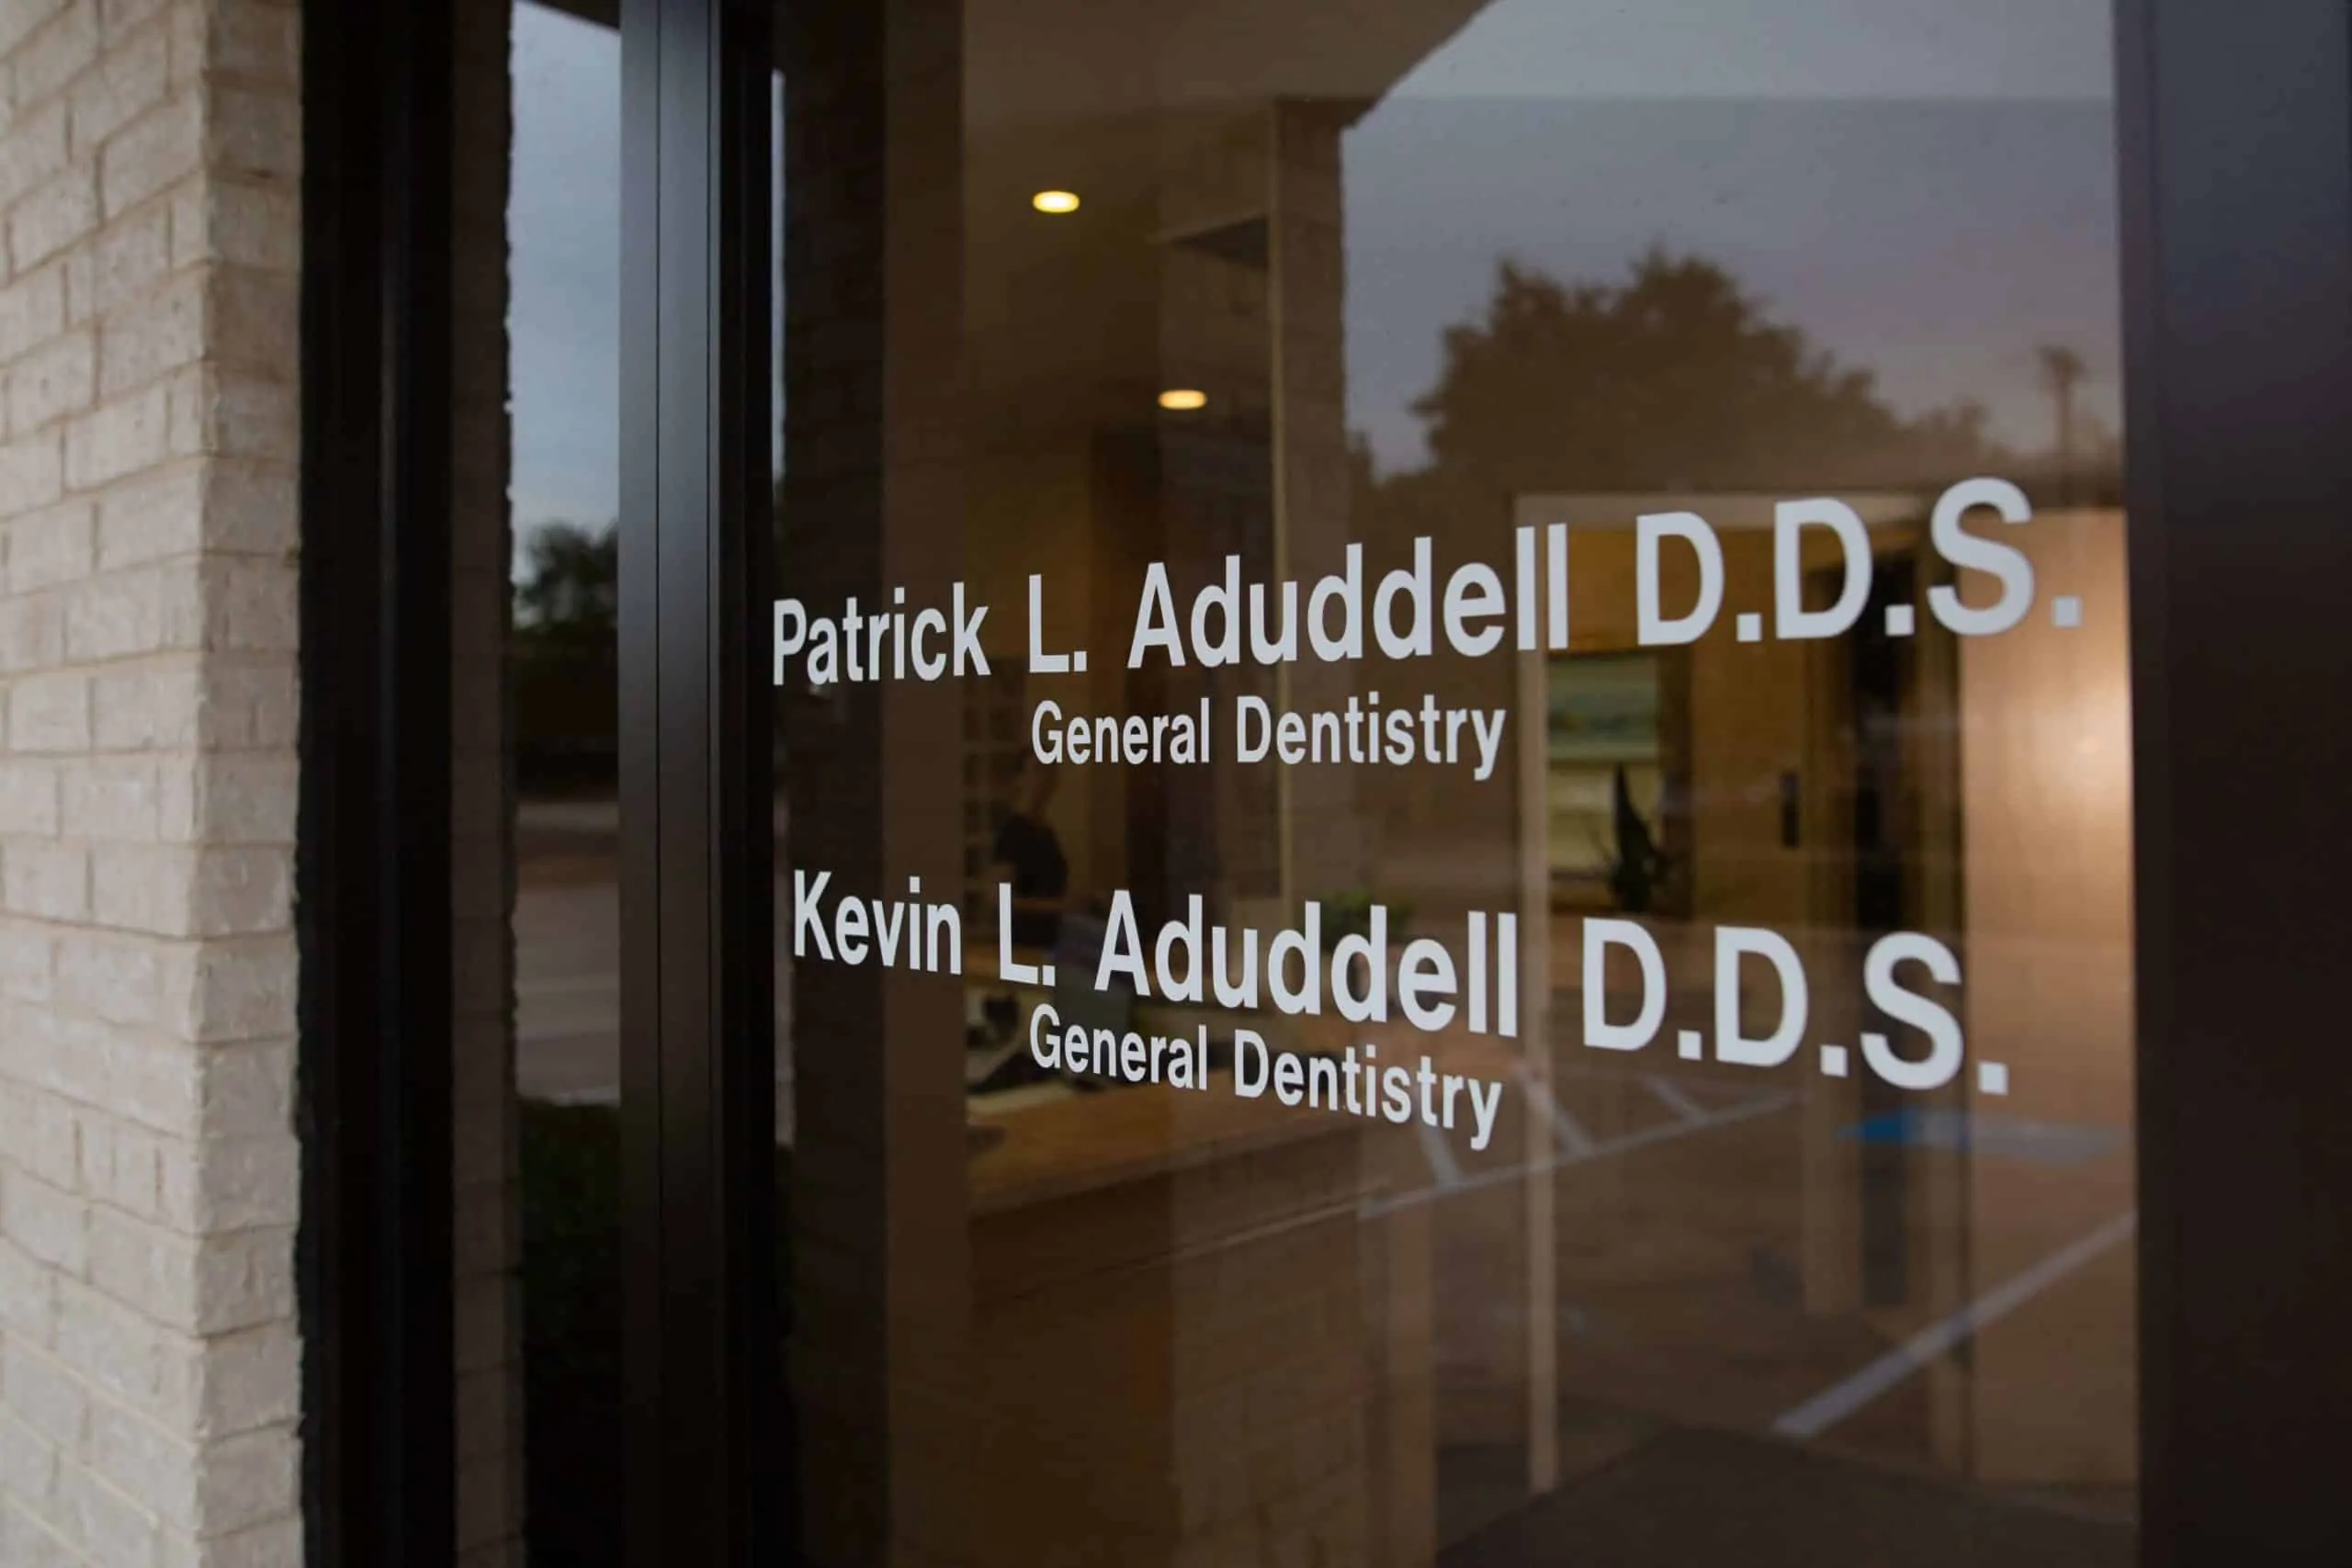 Aduddell Dentistry - Plano, TX